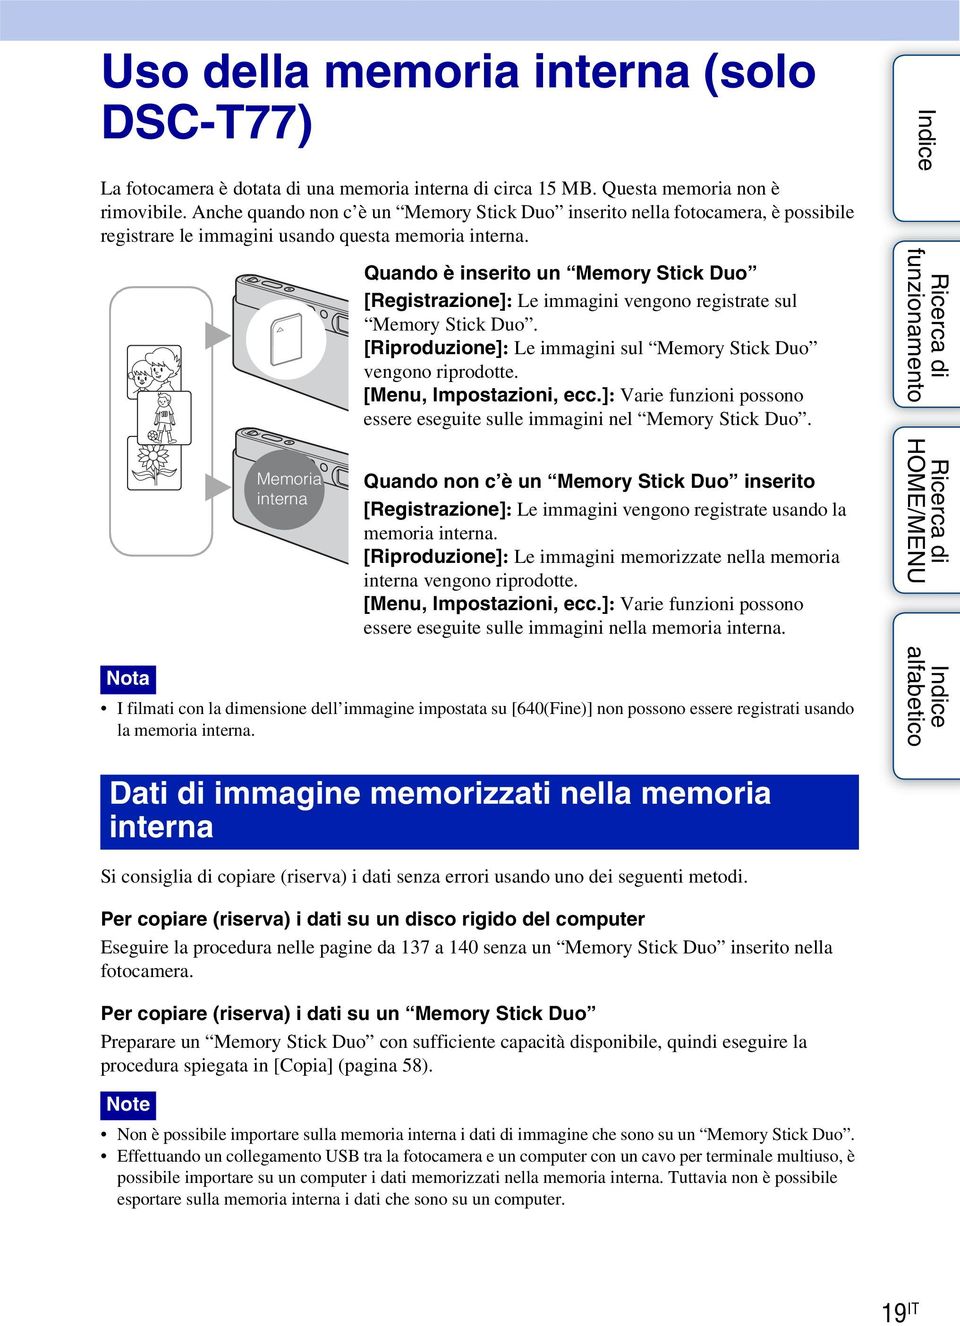 B B Memoria interna Quando è inserito un Memory Stick Duo [Registrazione]: Le immagini vengono registrate sul Memory Stick Duo. [Riproduzione]: Le immagini sul Memory Stick Duo vengono riprodotte.